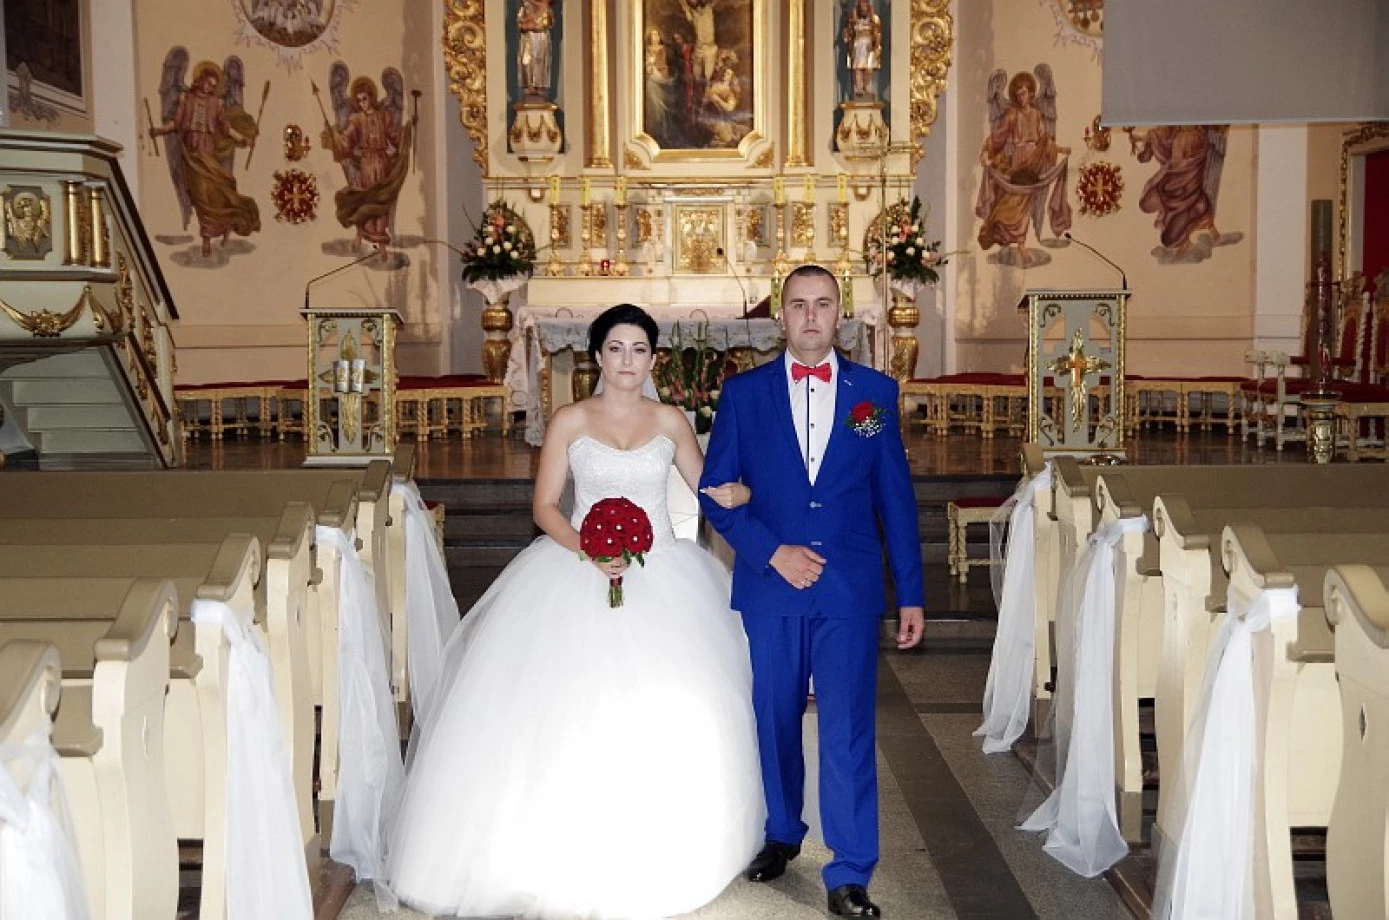 fotograf  robert-kaliszuk portfolio zdjecia slubne inspiracje wesele plener slubny sesja slubna